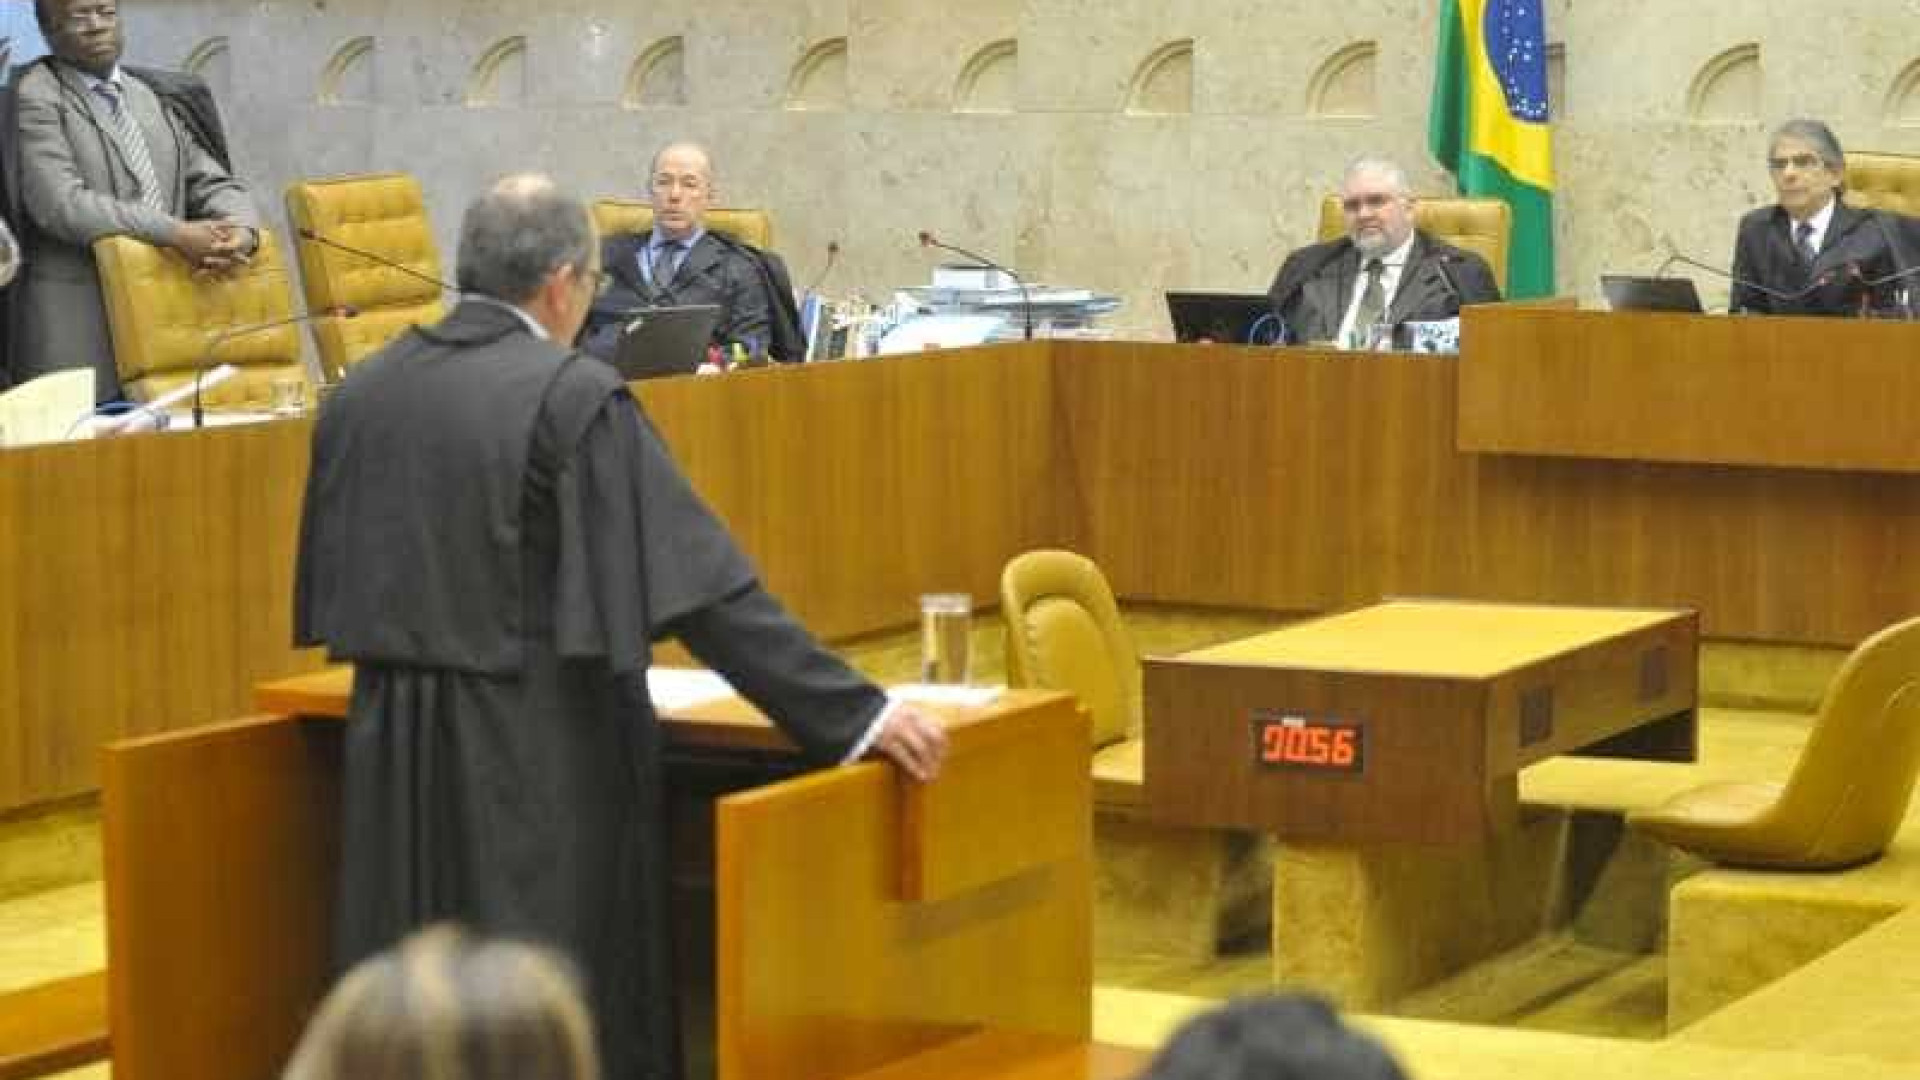 Assessoria do STF corrige informação sobre pedido de ex-diretor da Petrobras